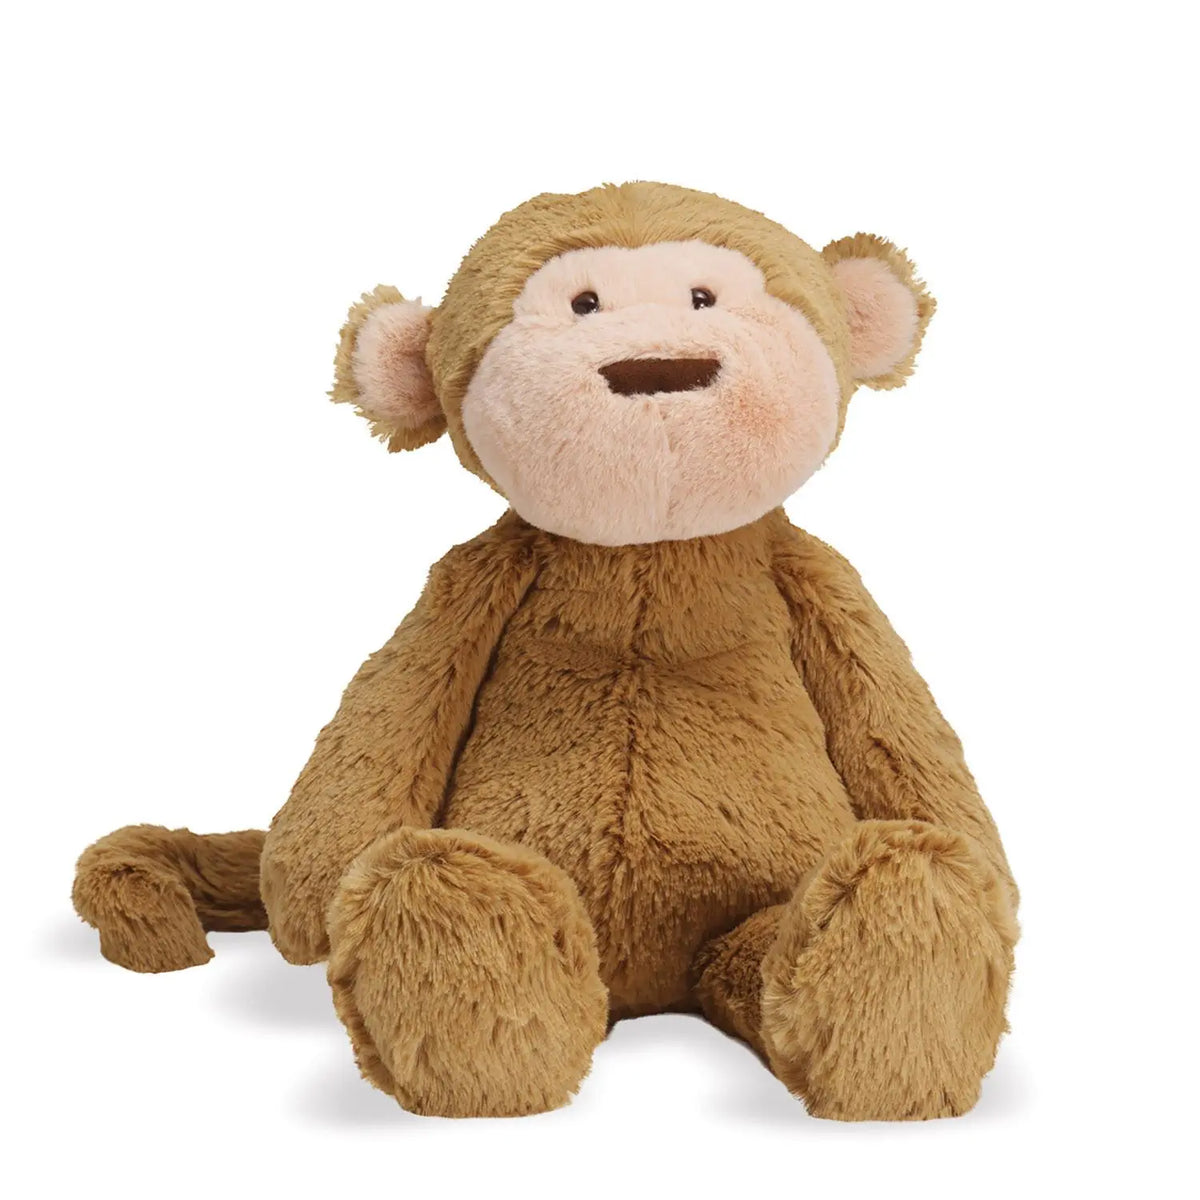 stuffed monkey